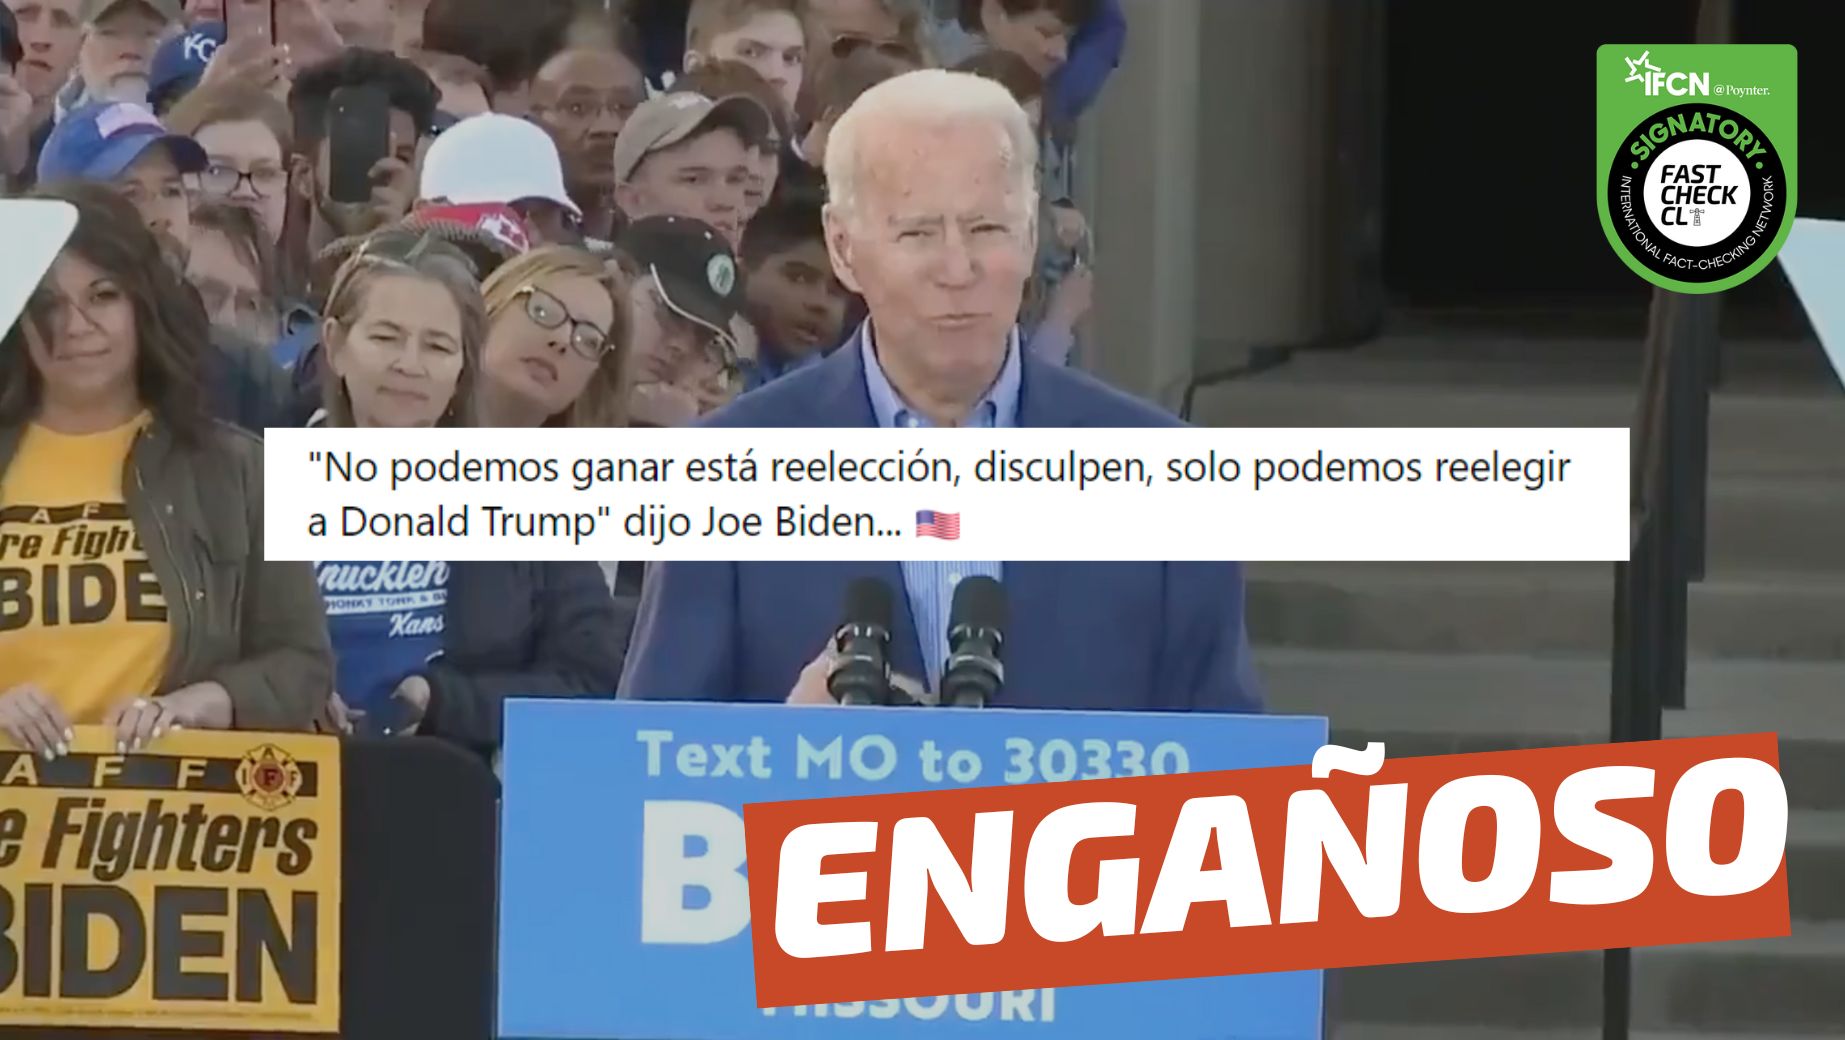 You are currently viewing (Video) Joe Biden: “No podemos ganar esta reelección, disculpen, solo podemos reelegir a Donald Trump”: #Engañoso